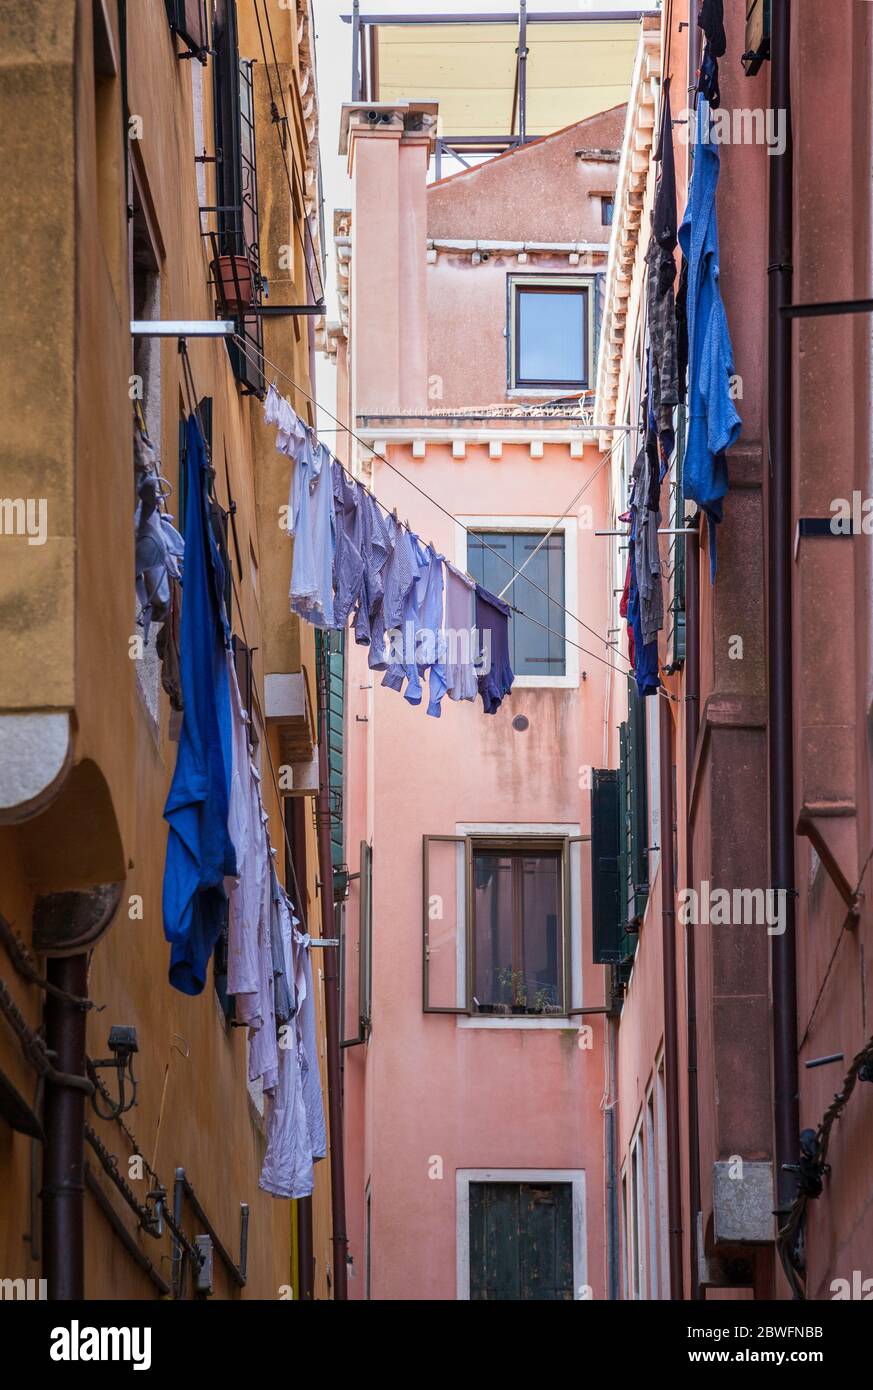 Lavaggio appeso ad asciugare in alto in una strada secondaria di Venezia Foto Stock